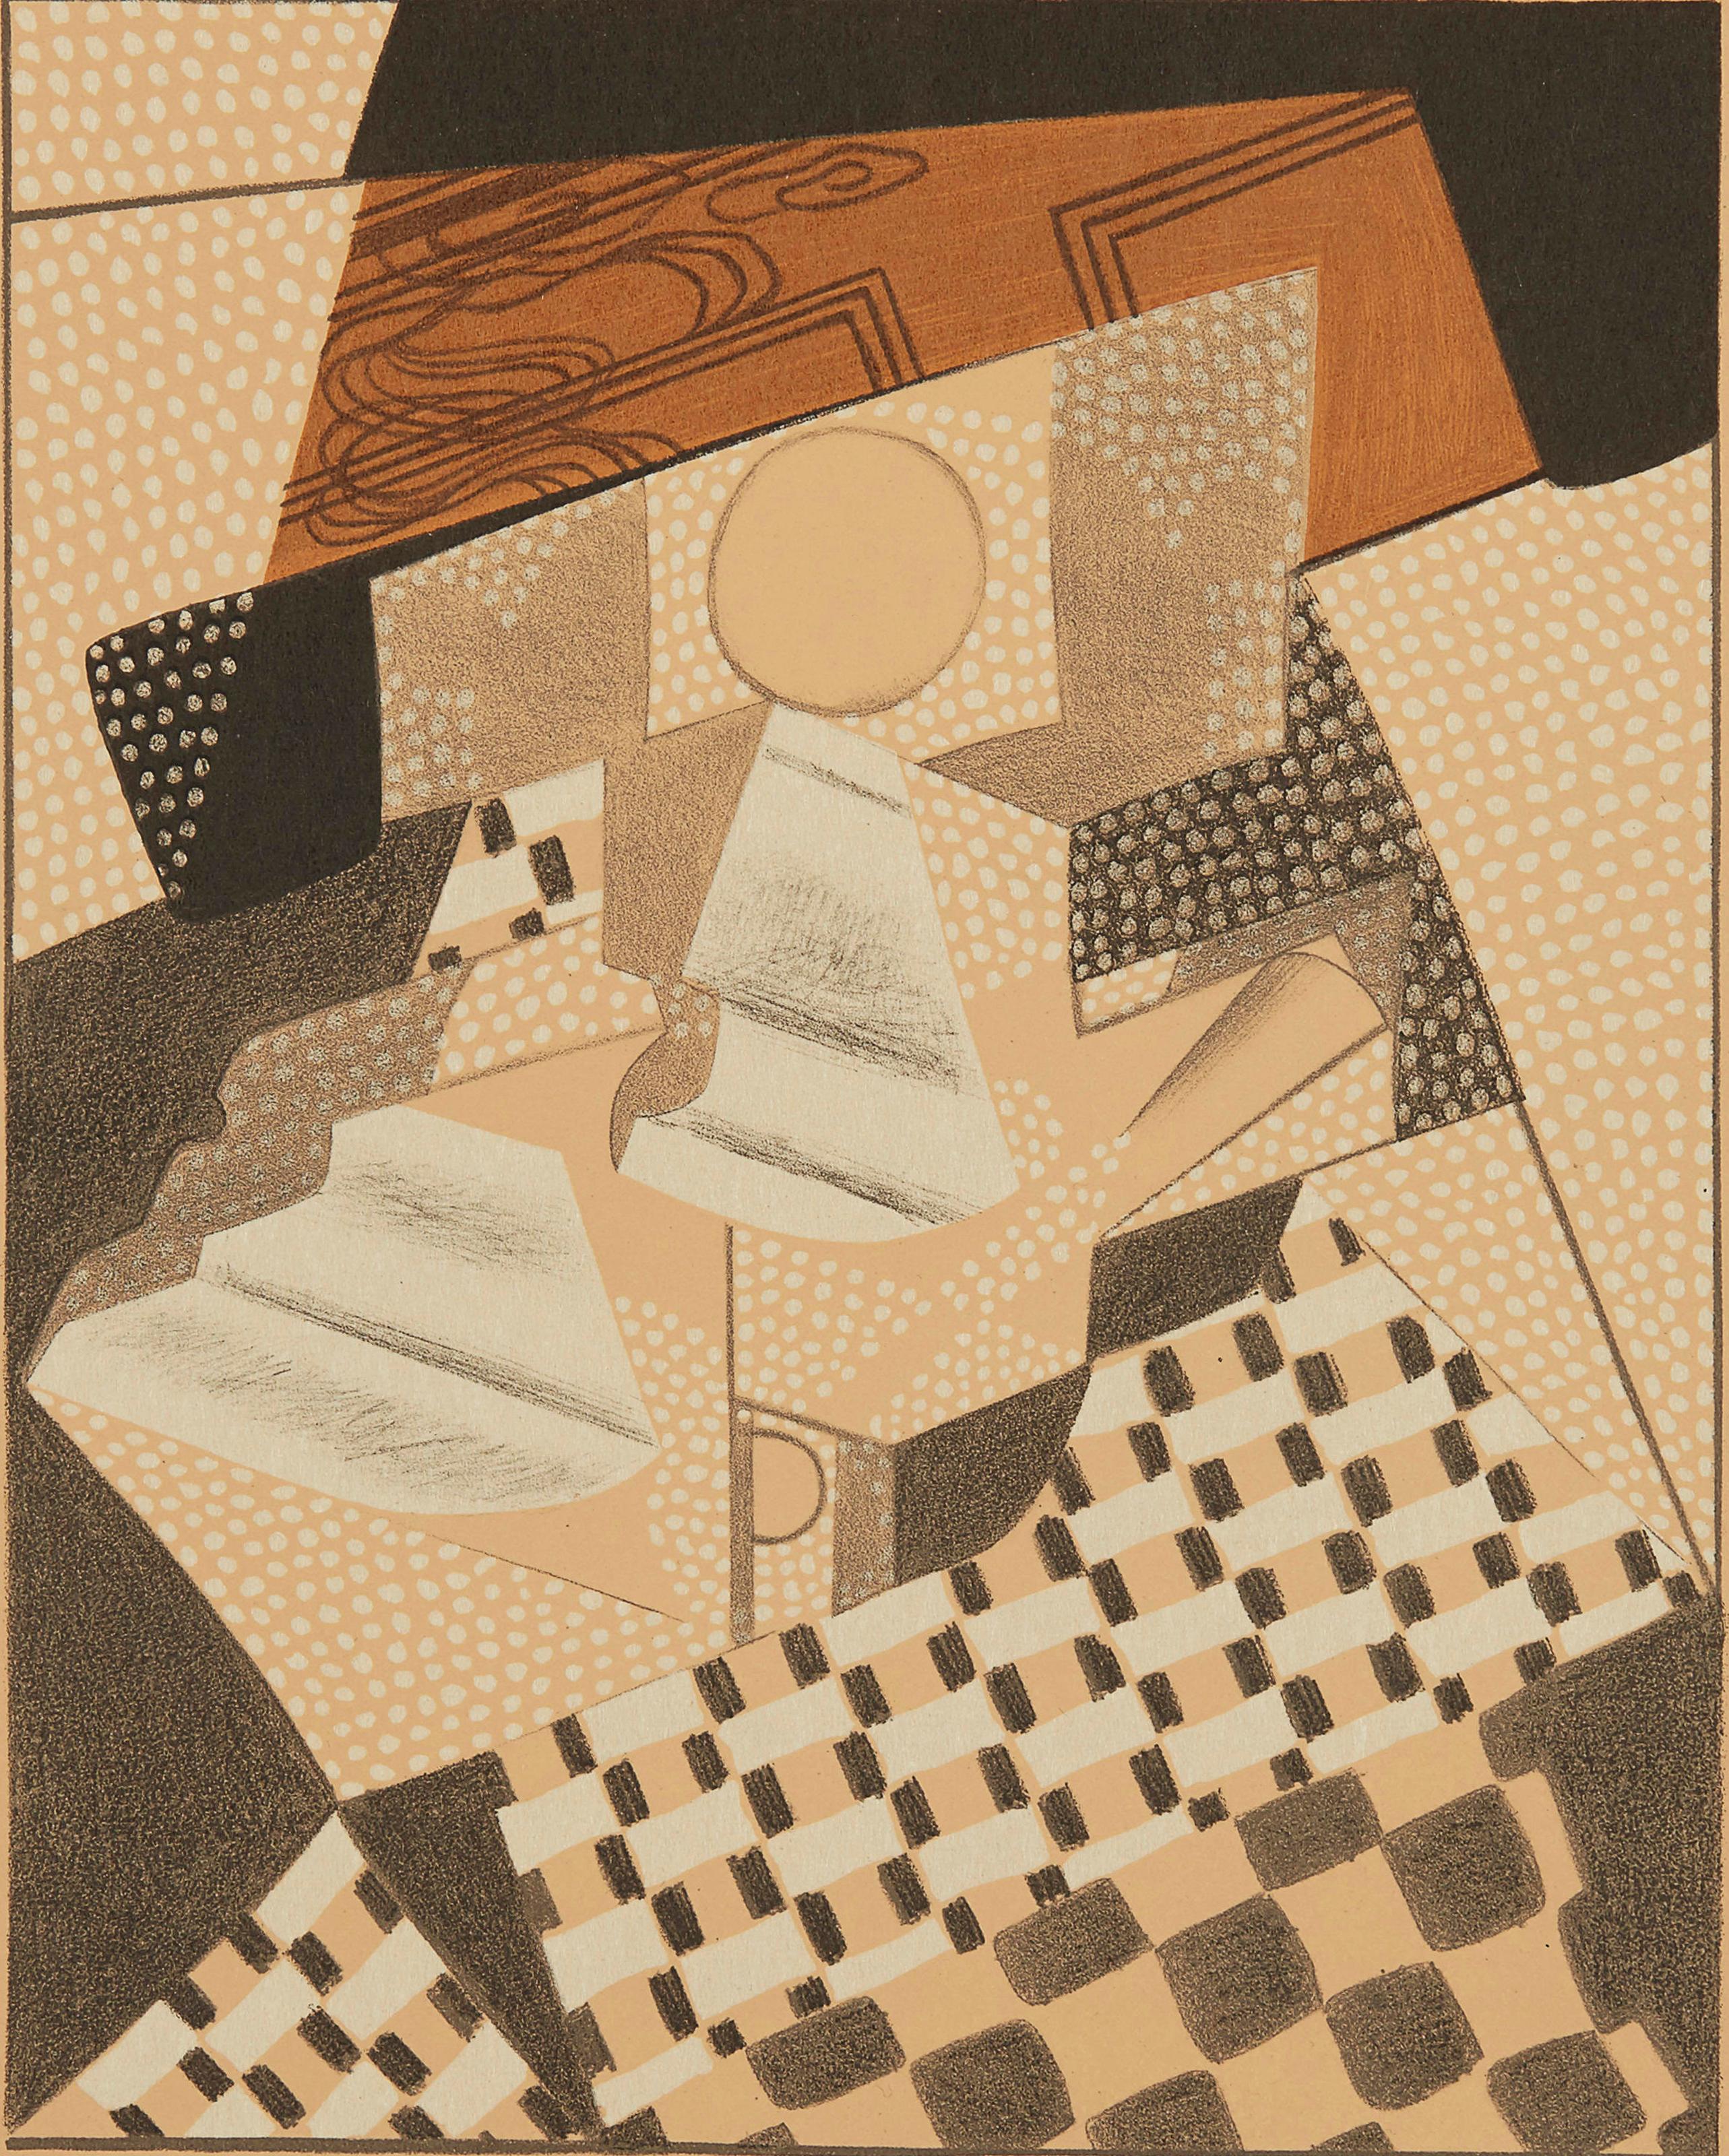 Gris, Loupière (Kahnweiler 1969), Au Soleil du Plafond (d'après) - Print de Juan Gris